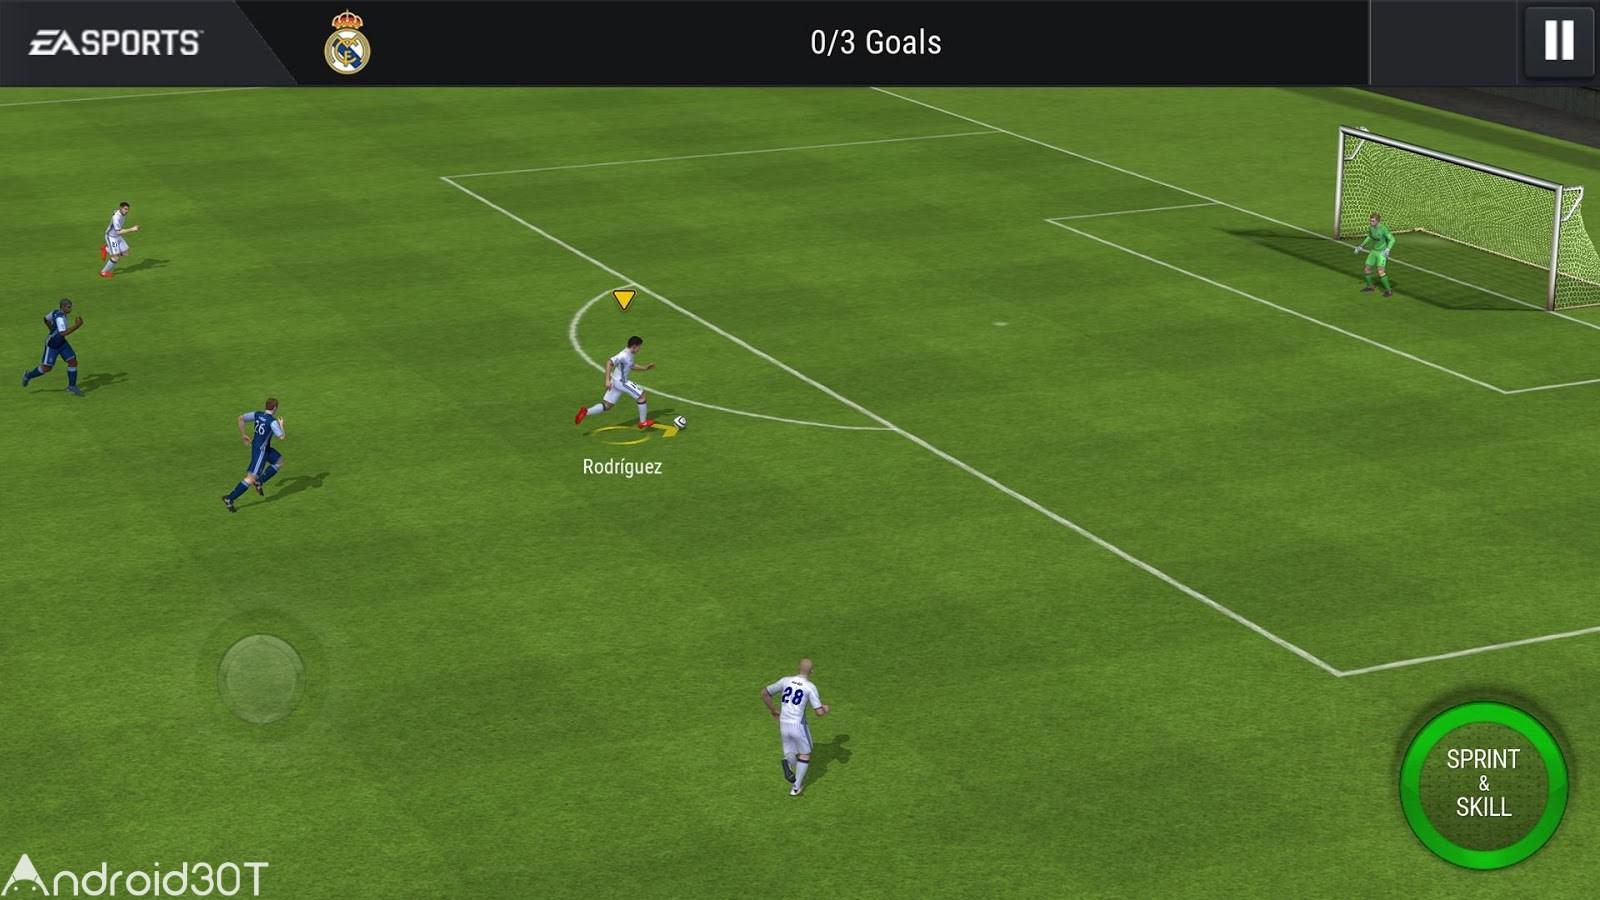 دانلود بازی فوتبال فیفا 2023 موبایل FIFA Mobile Soccer 18.0.04 اندروید